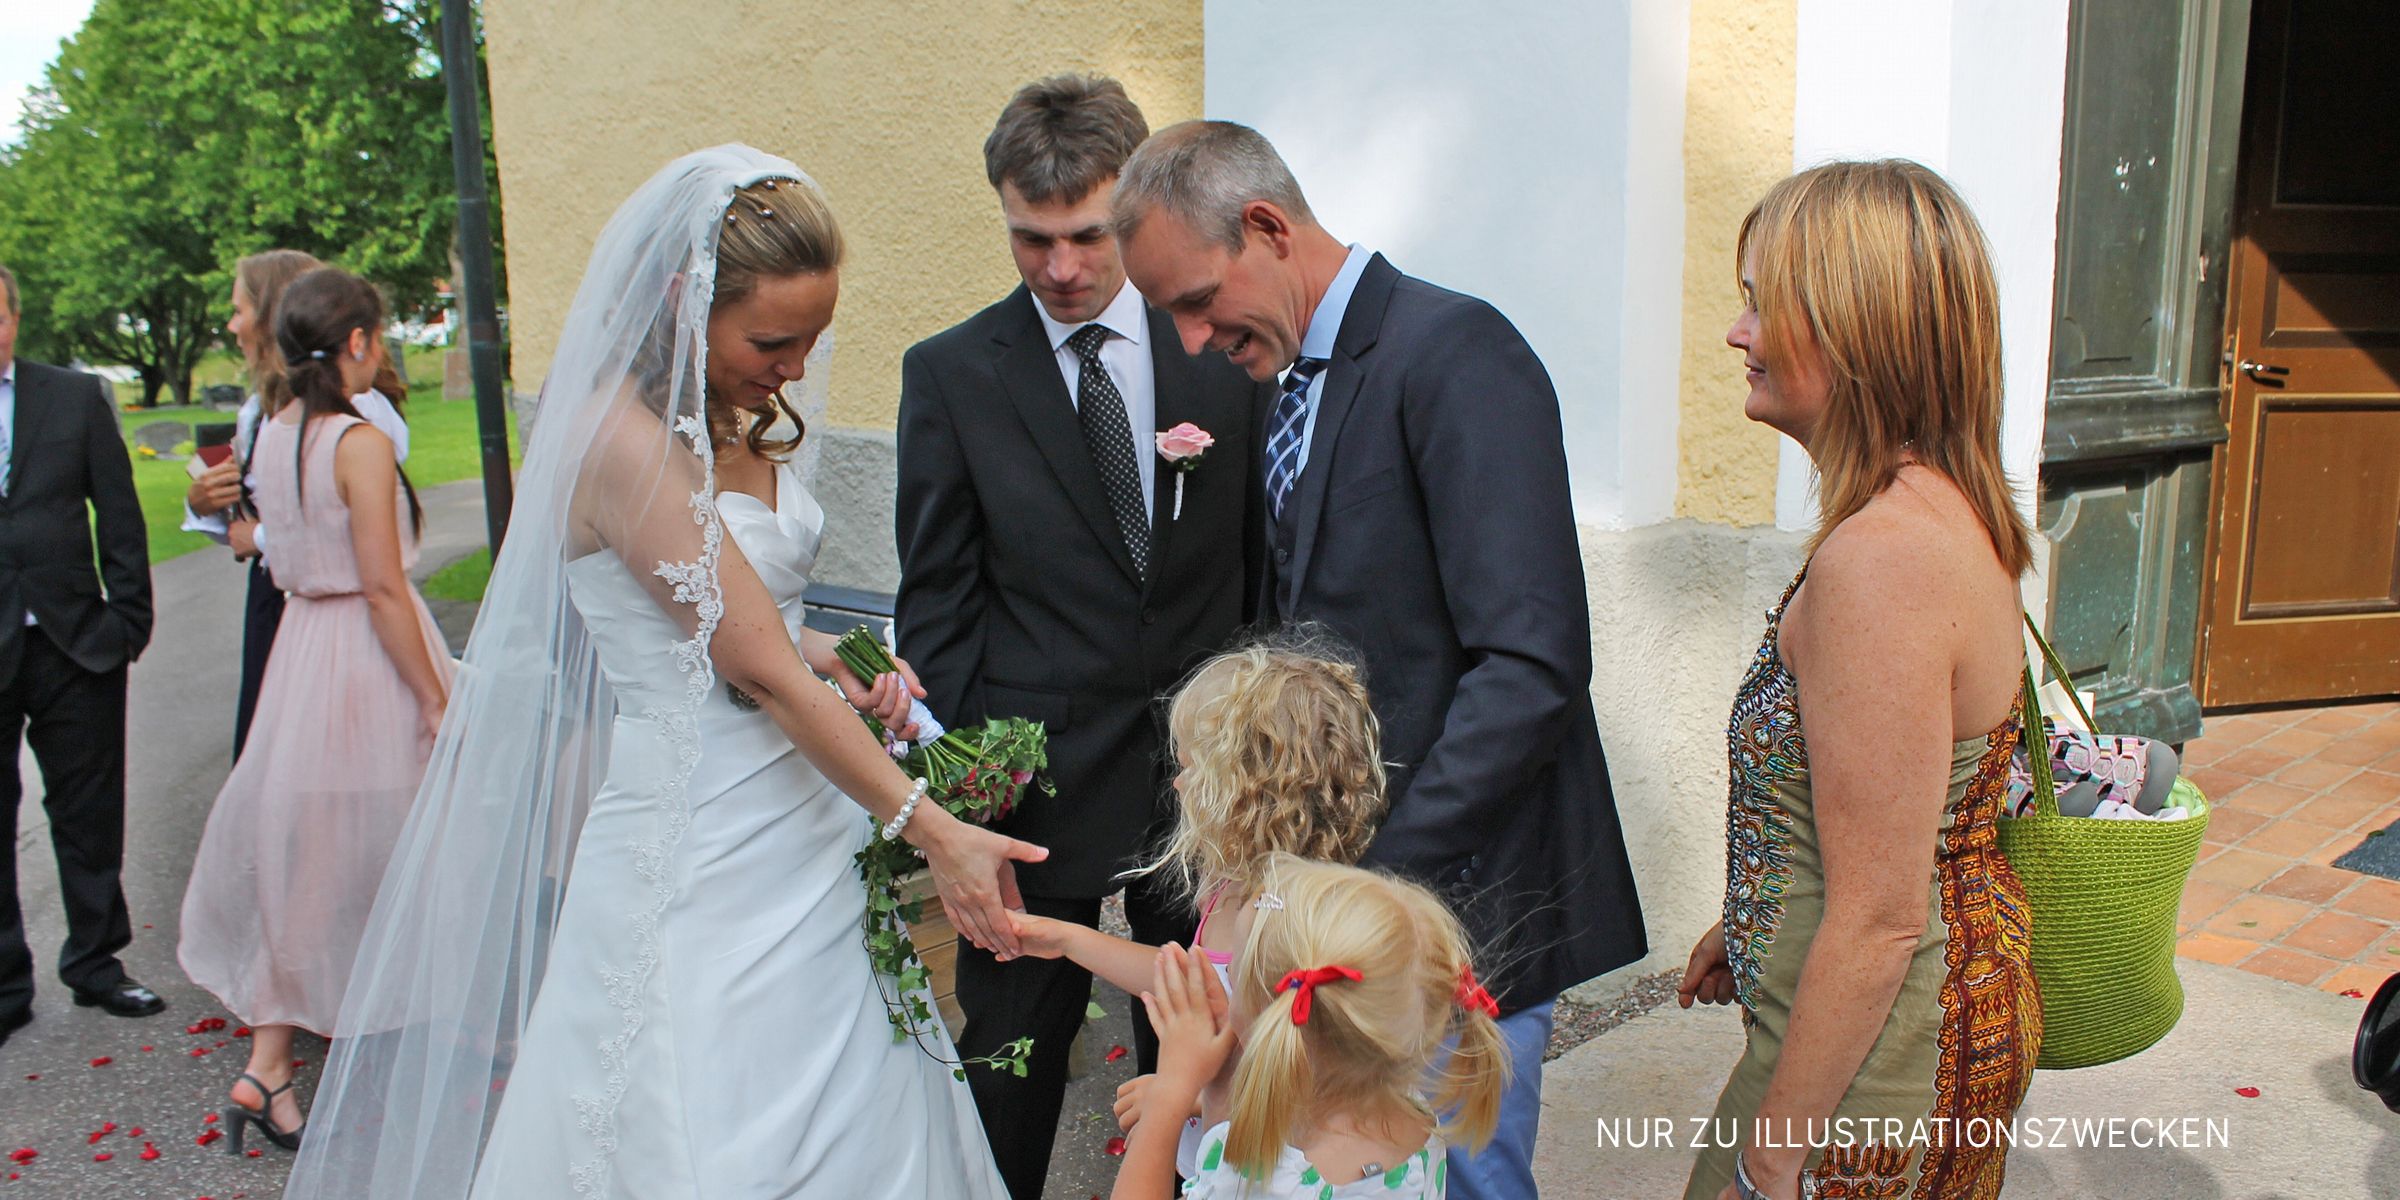 Glückliche Braut mit Blumenmädchen an ihrem Hochzeitstag. | Quelle: Flickr/sebilden (CC BY 2.0)